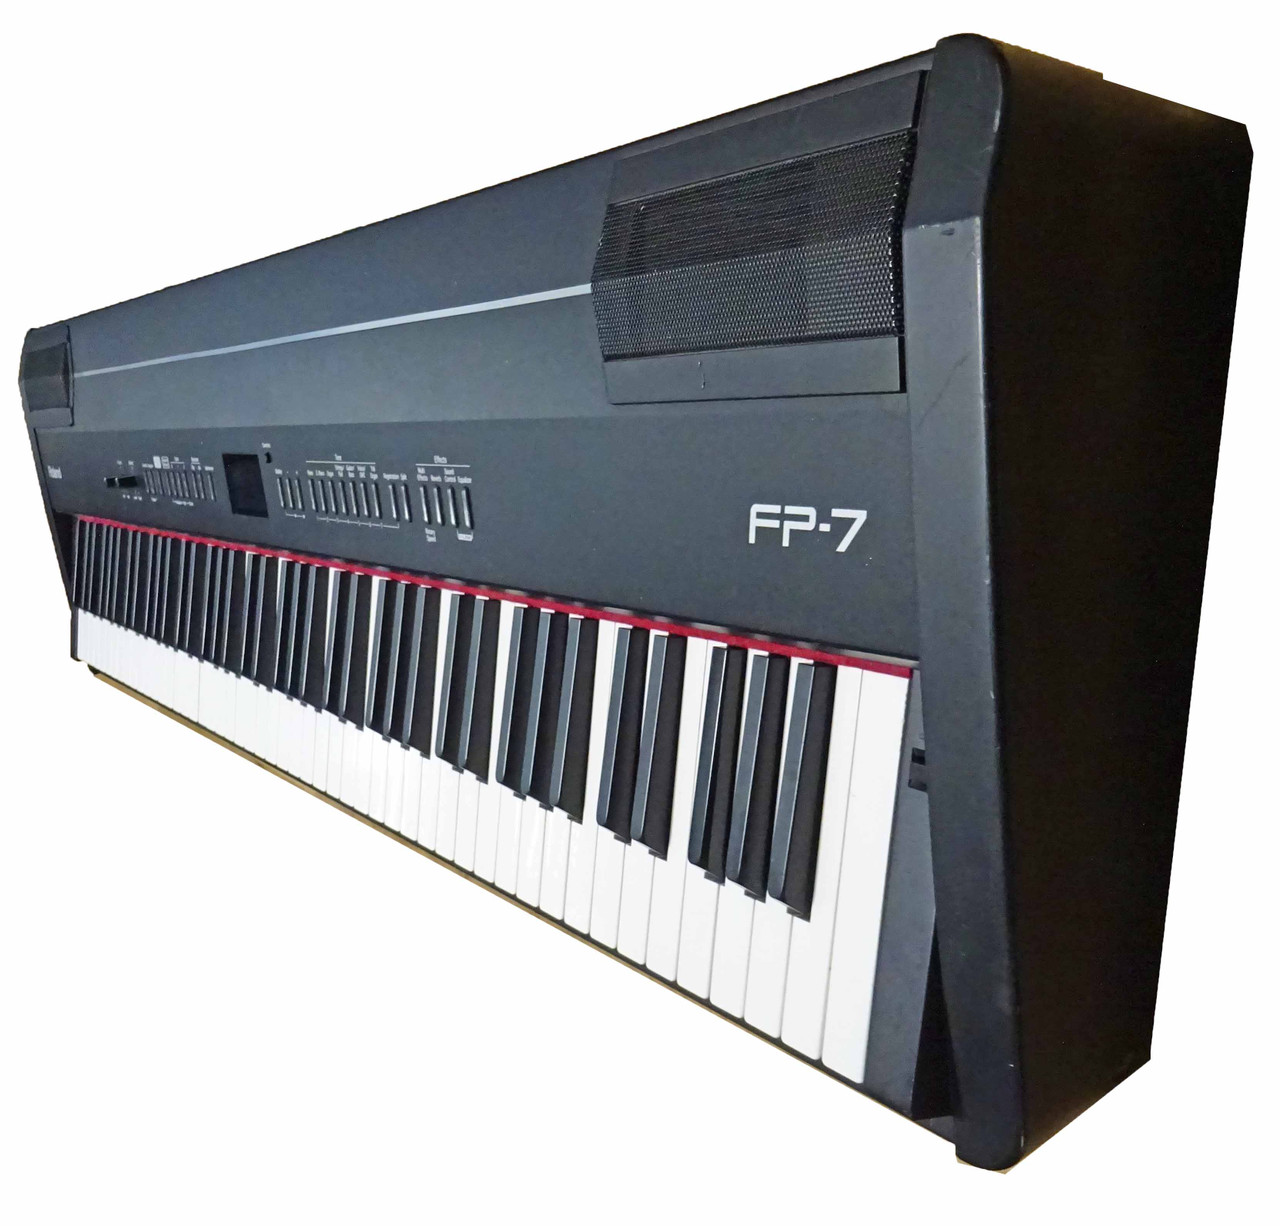 ローランド FP-7 電子ピアノ - 神奈川県のその他